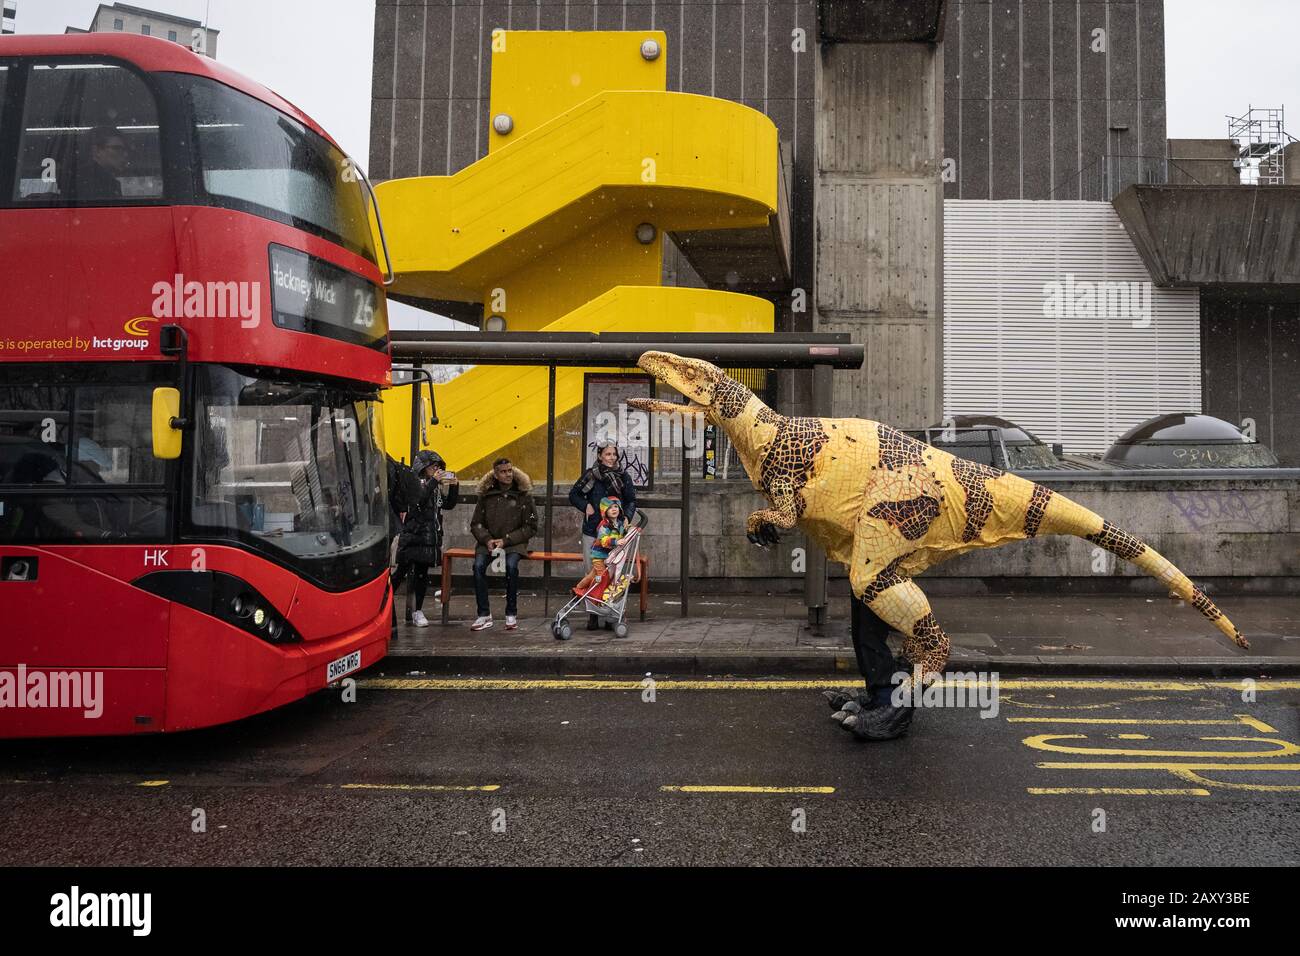 Une marionnette vélociraptor de dinosaure de style vivant accueille un bus sur le pont de Waterloo comme un cascades publicitaires pour le zoo des dinosaures d'Erth, Southbank, Londres, Royaume-Uni Banque D'Images